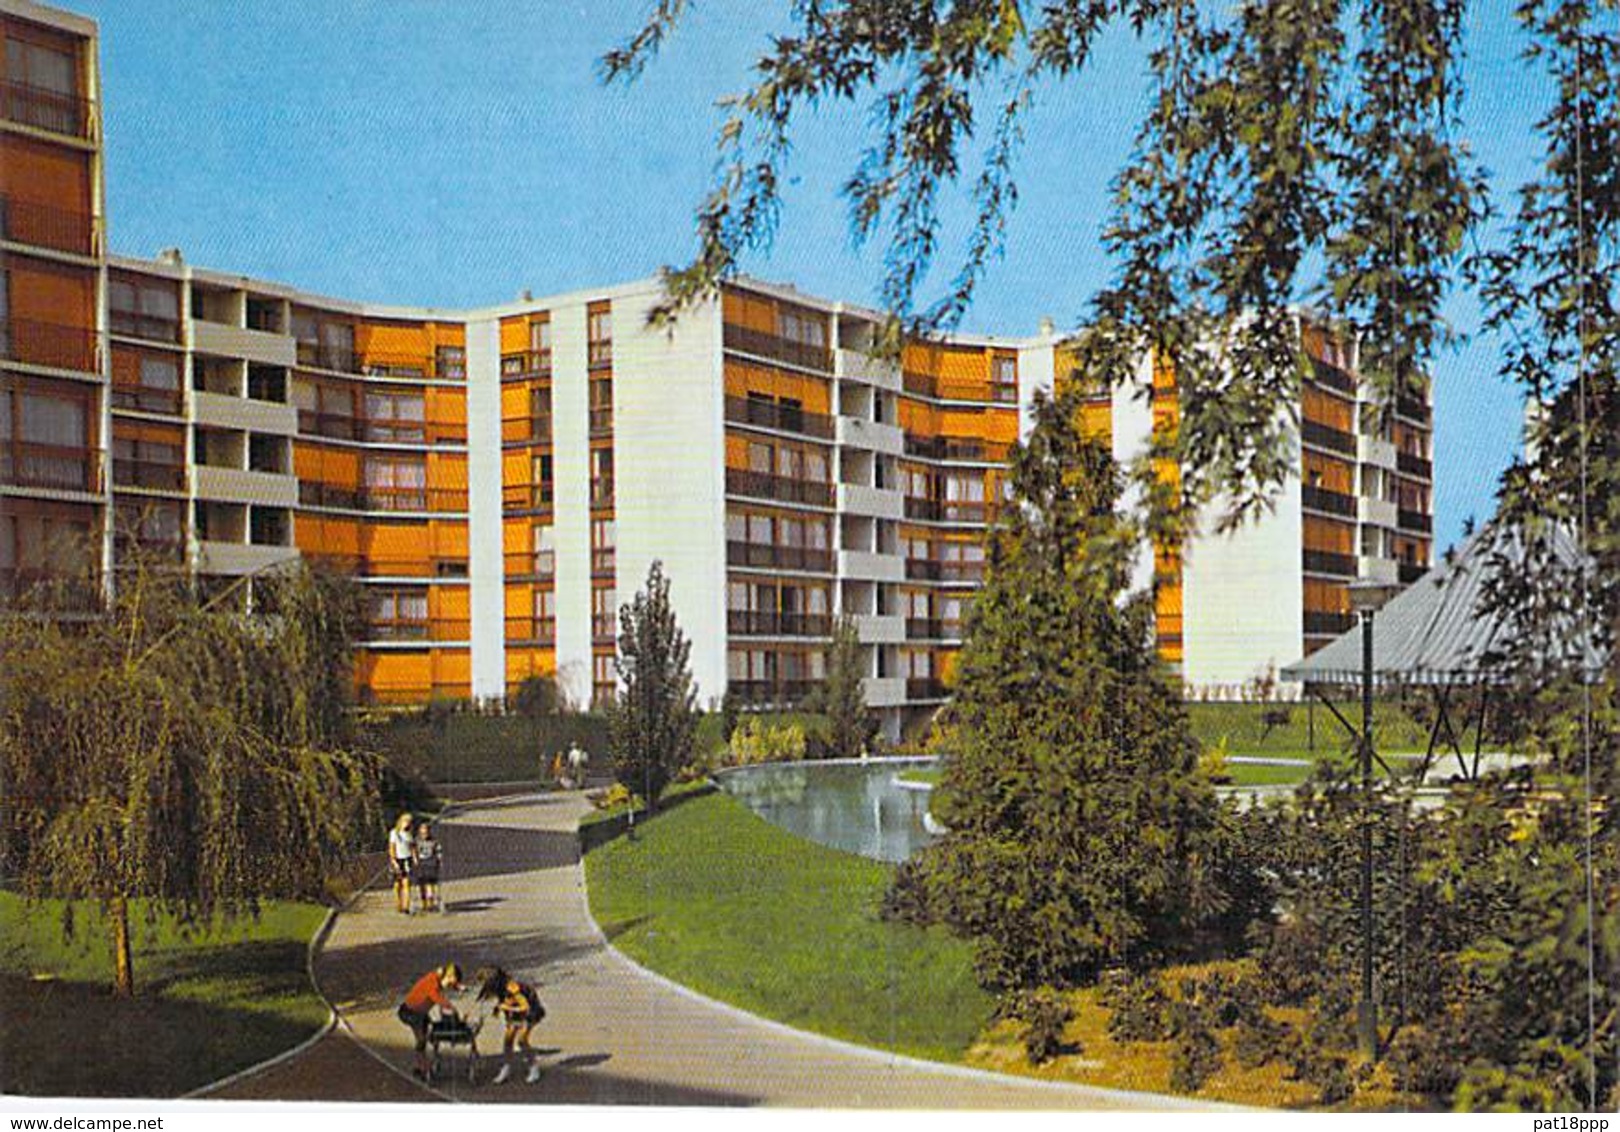 ** Lot De 2 Cartes ** 91 - RIS ORANGIS Domaine De L'Aunette ( Immeubles Cité HLM Résidence ) CPSM GF 1974 - Essonne - Ris Orangis